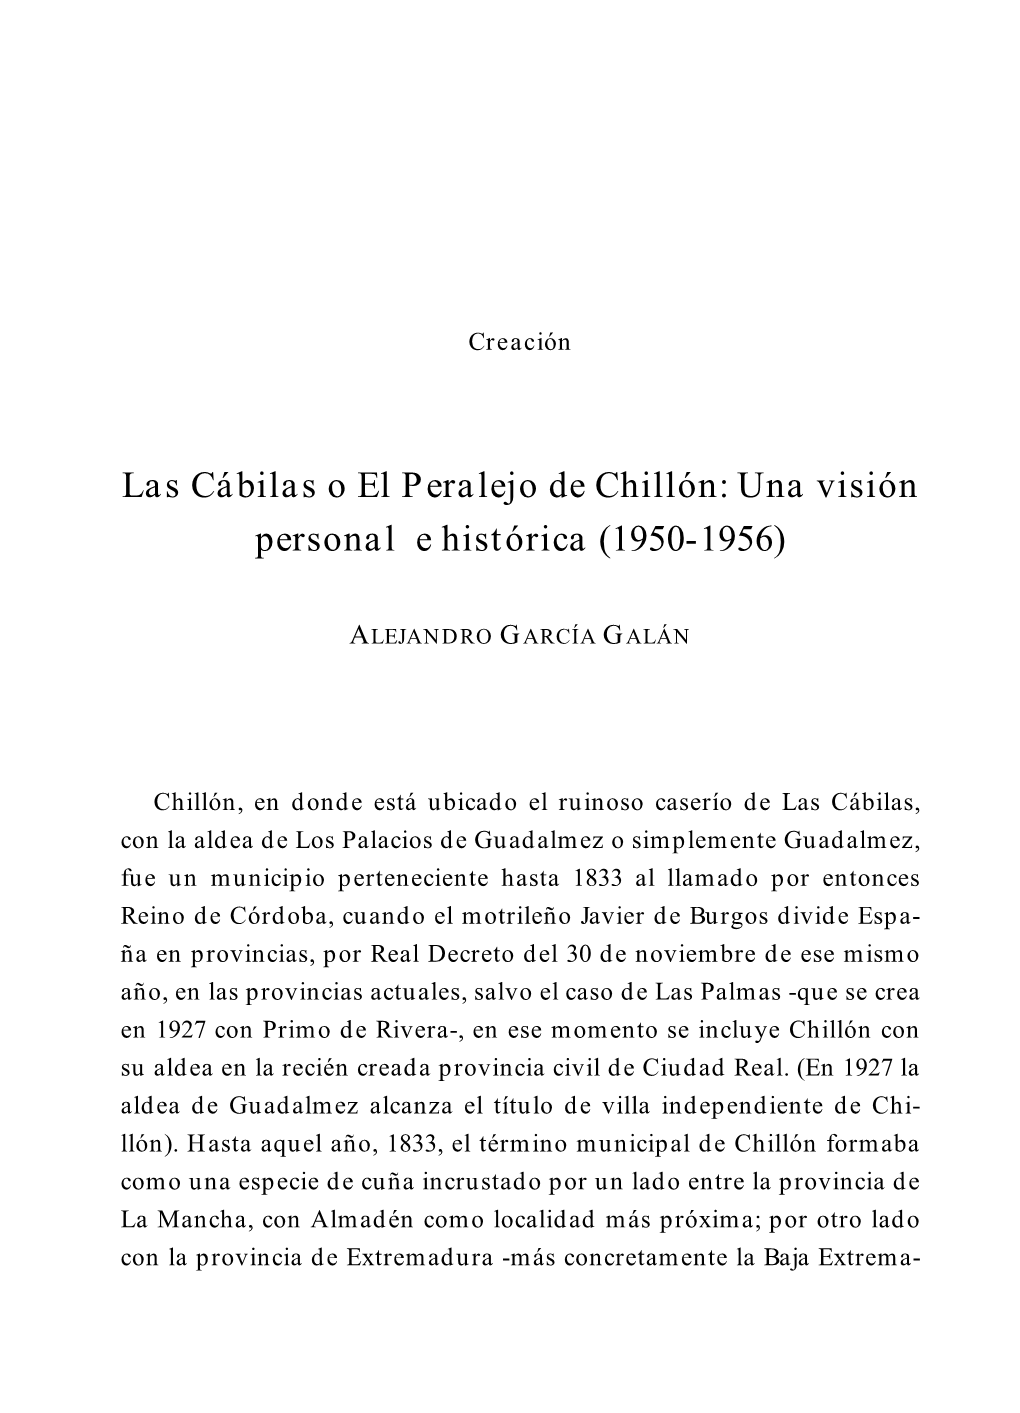 Las Cábilas O El Peralejo De Chillón: Una Visión Personal E Histórica (1950-1956)